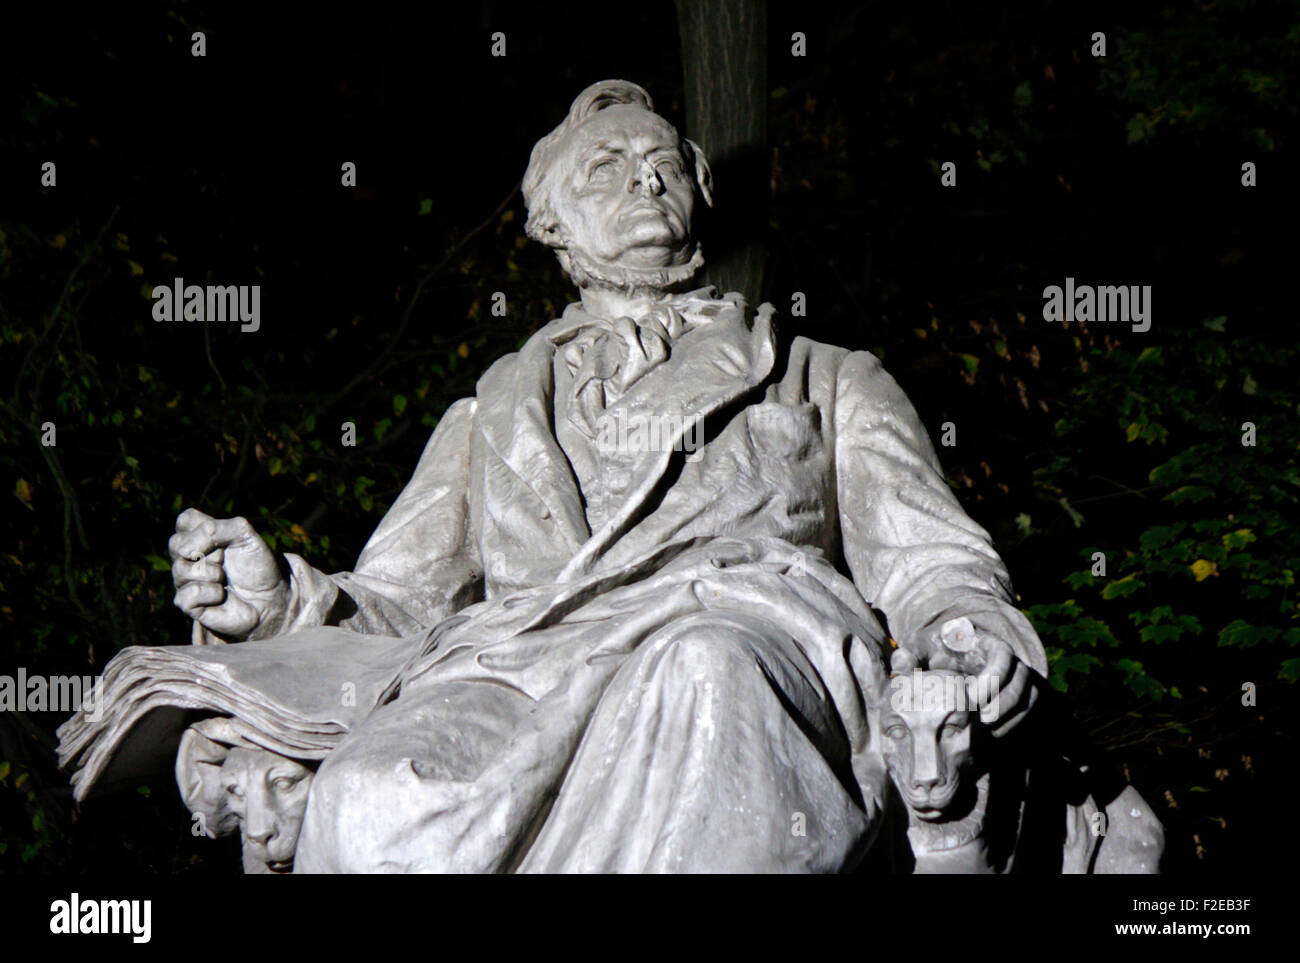 NOVEMBER 2013 - BERLIN: eine Statue von der deutsche Komponist Richard Wagner im Tiergarten in Berlin des 19. Jahrhunderts. Stockfoto